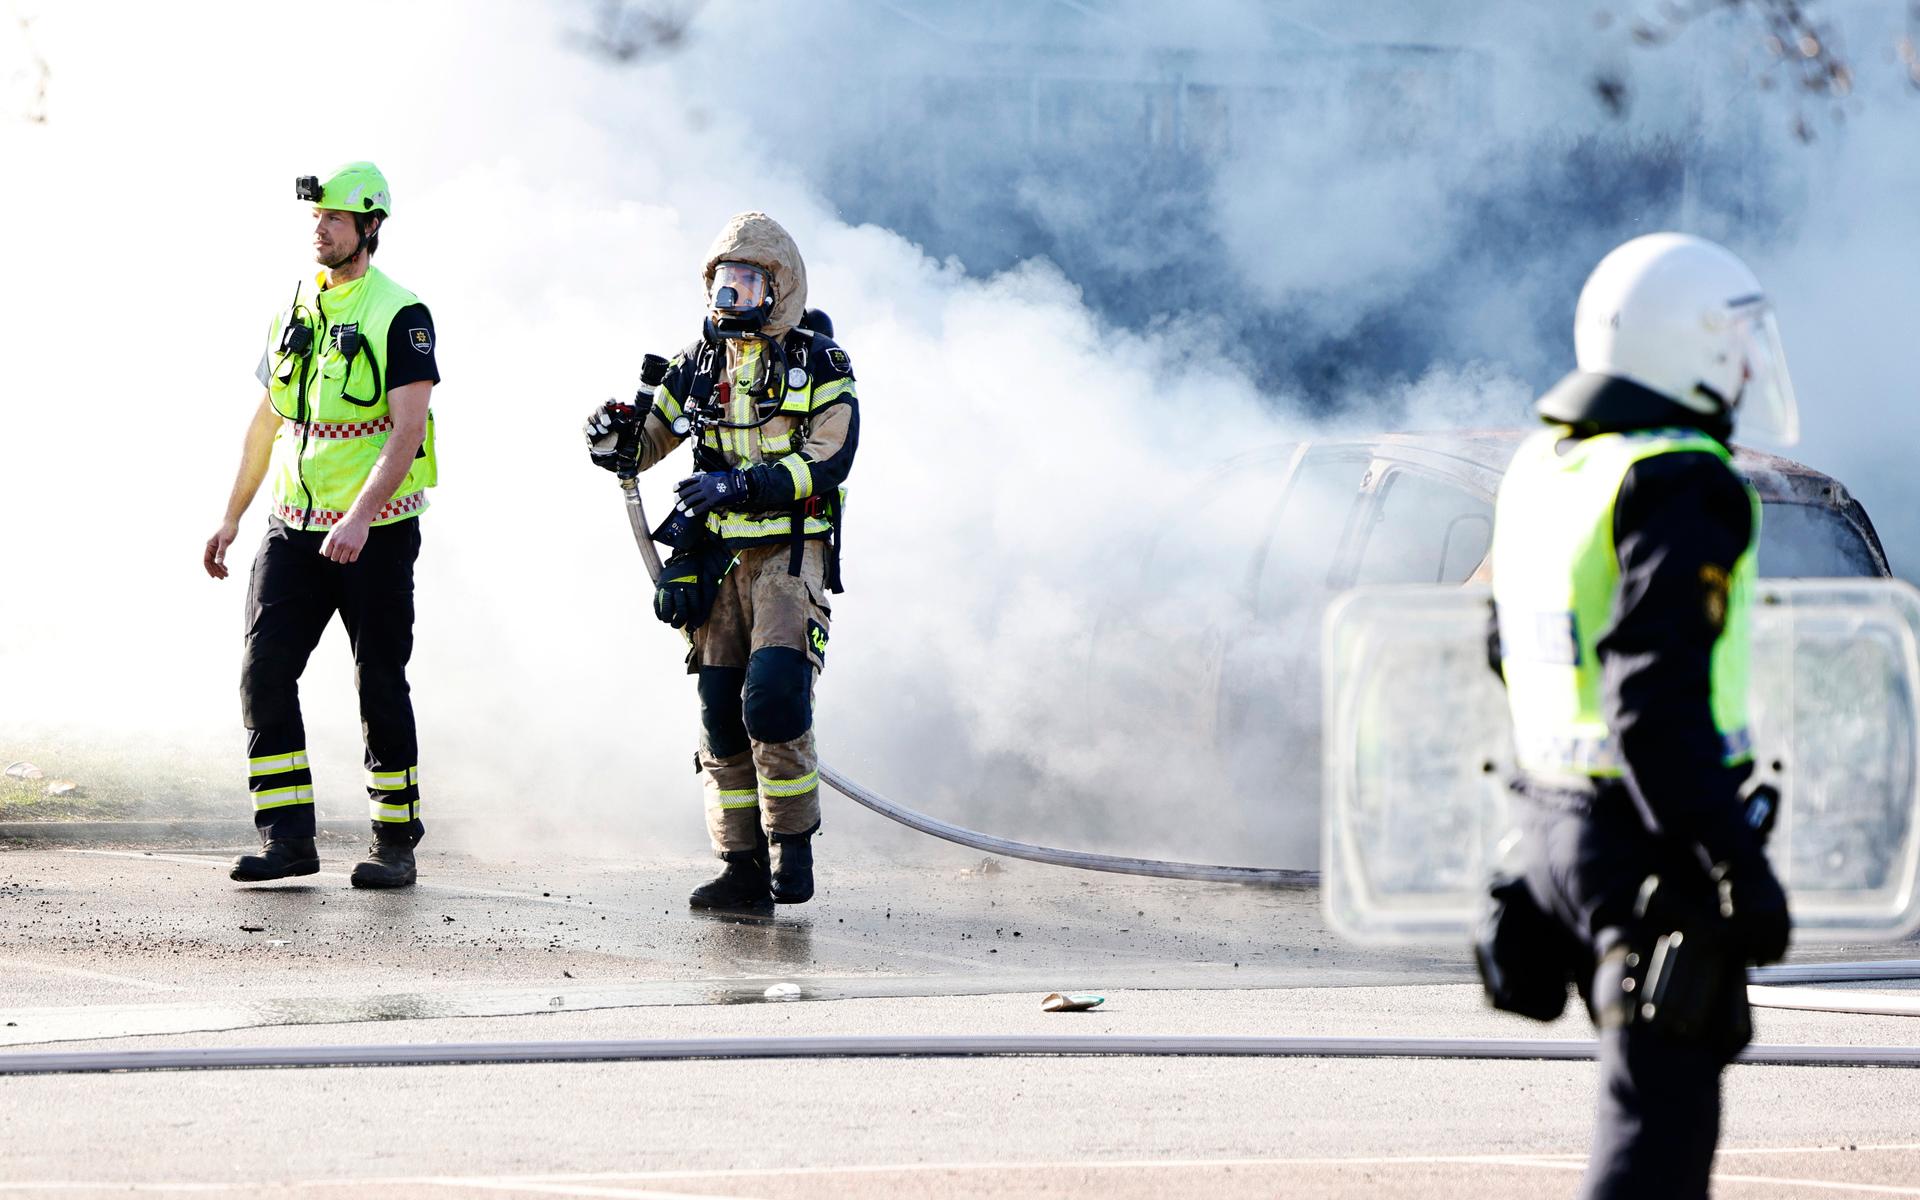 Räddningstjänst släcker bilbränder vid Ringdansen centrum i samband med upplopp i Navestad i Norrköping på påskdagen.Oroligheterna utlöstes av att den högerextrema provokatören Rasmus Paludan har sagt att han ska återvända till Östergötland för nya demonstrationer under dagen.